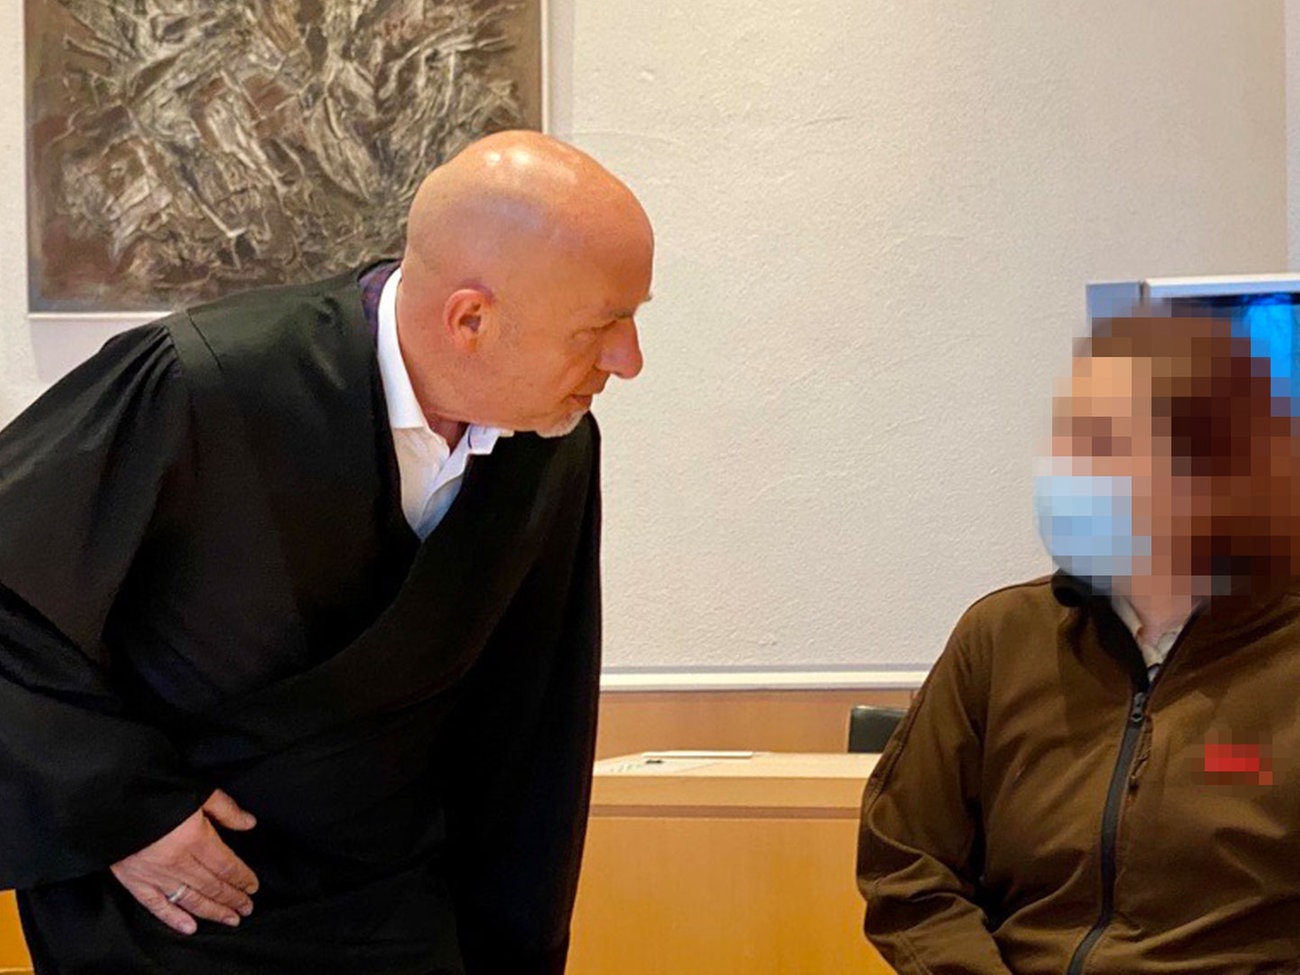 Mutter soll eigenen Sohn sexuell missbraucht haben hessenschau.de Panorama